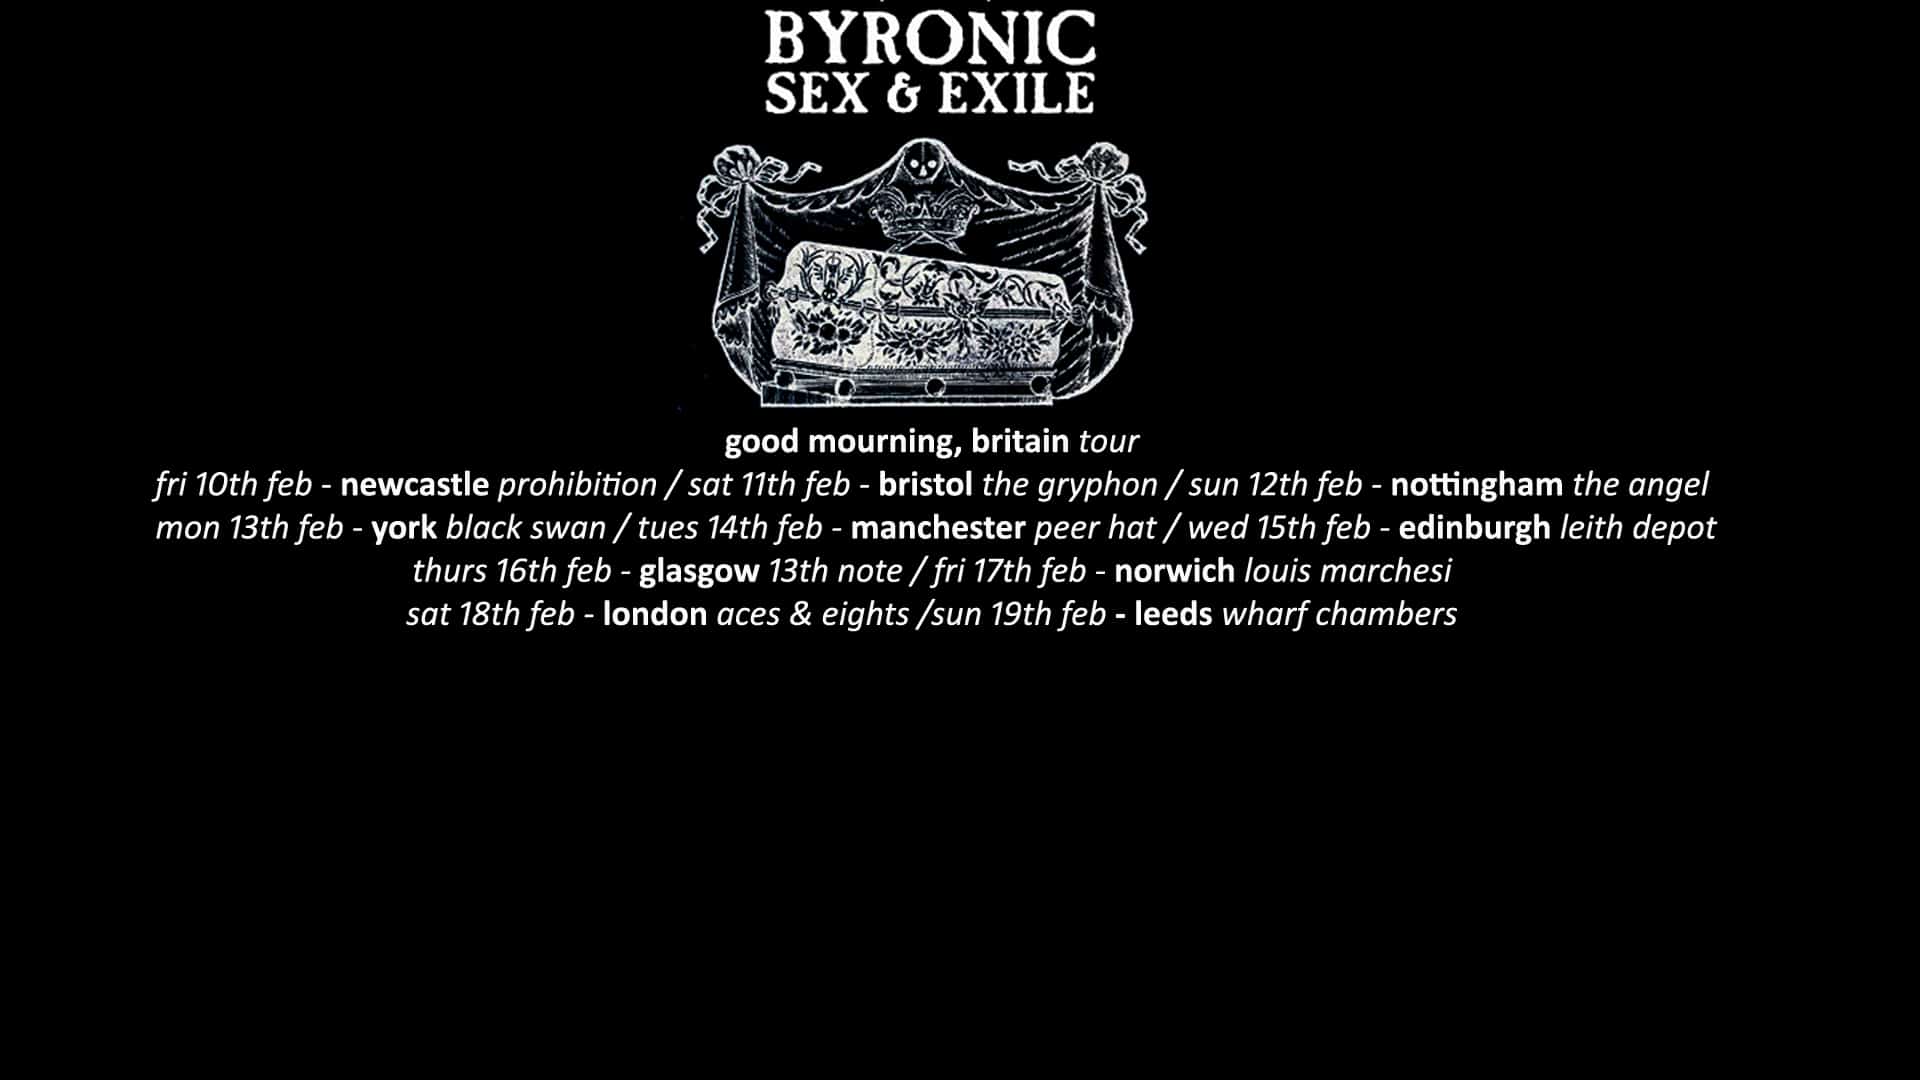 Byronic